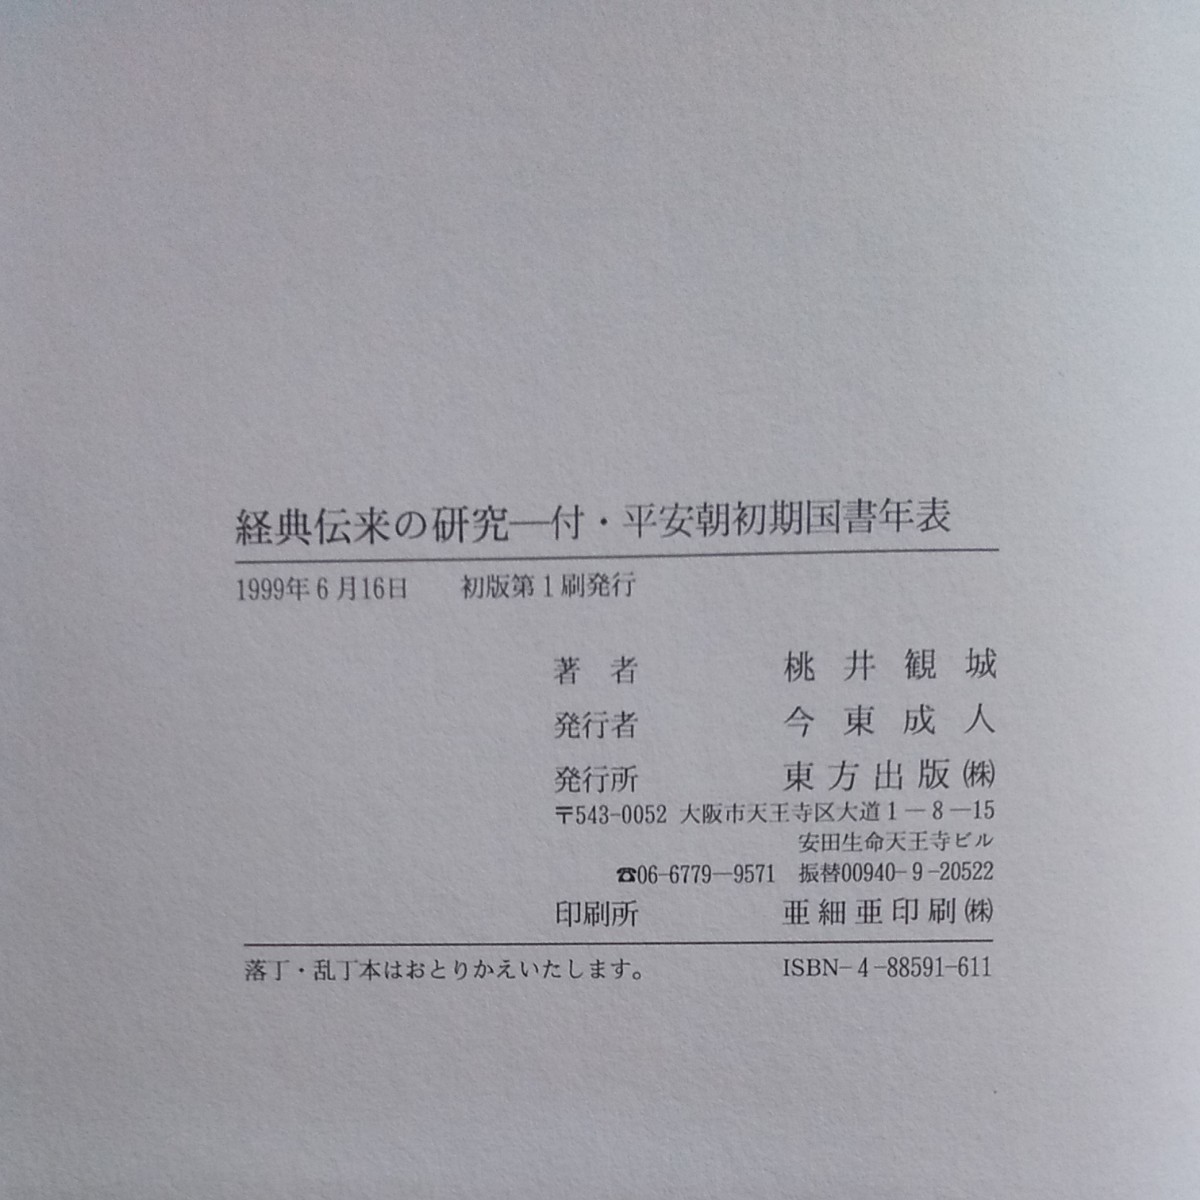 桃井観城著『経典伝来の研究』東方出版